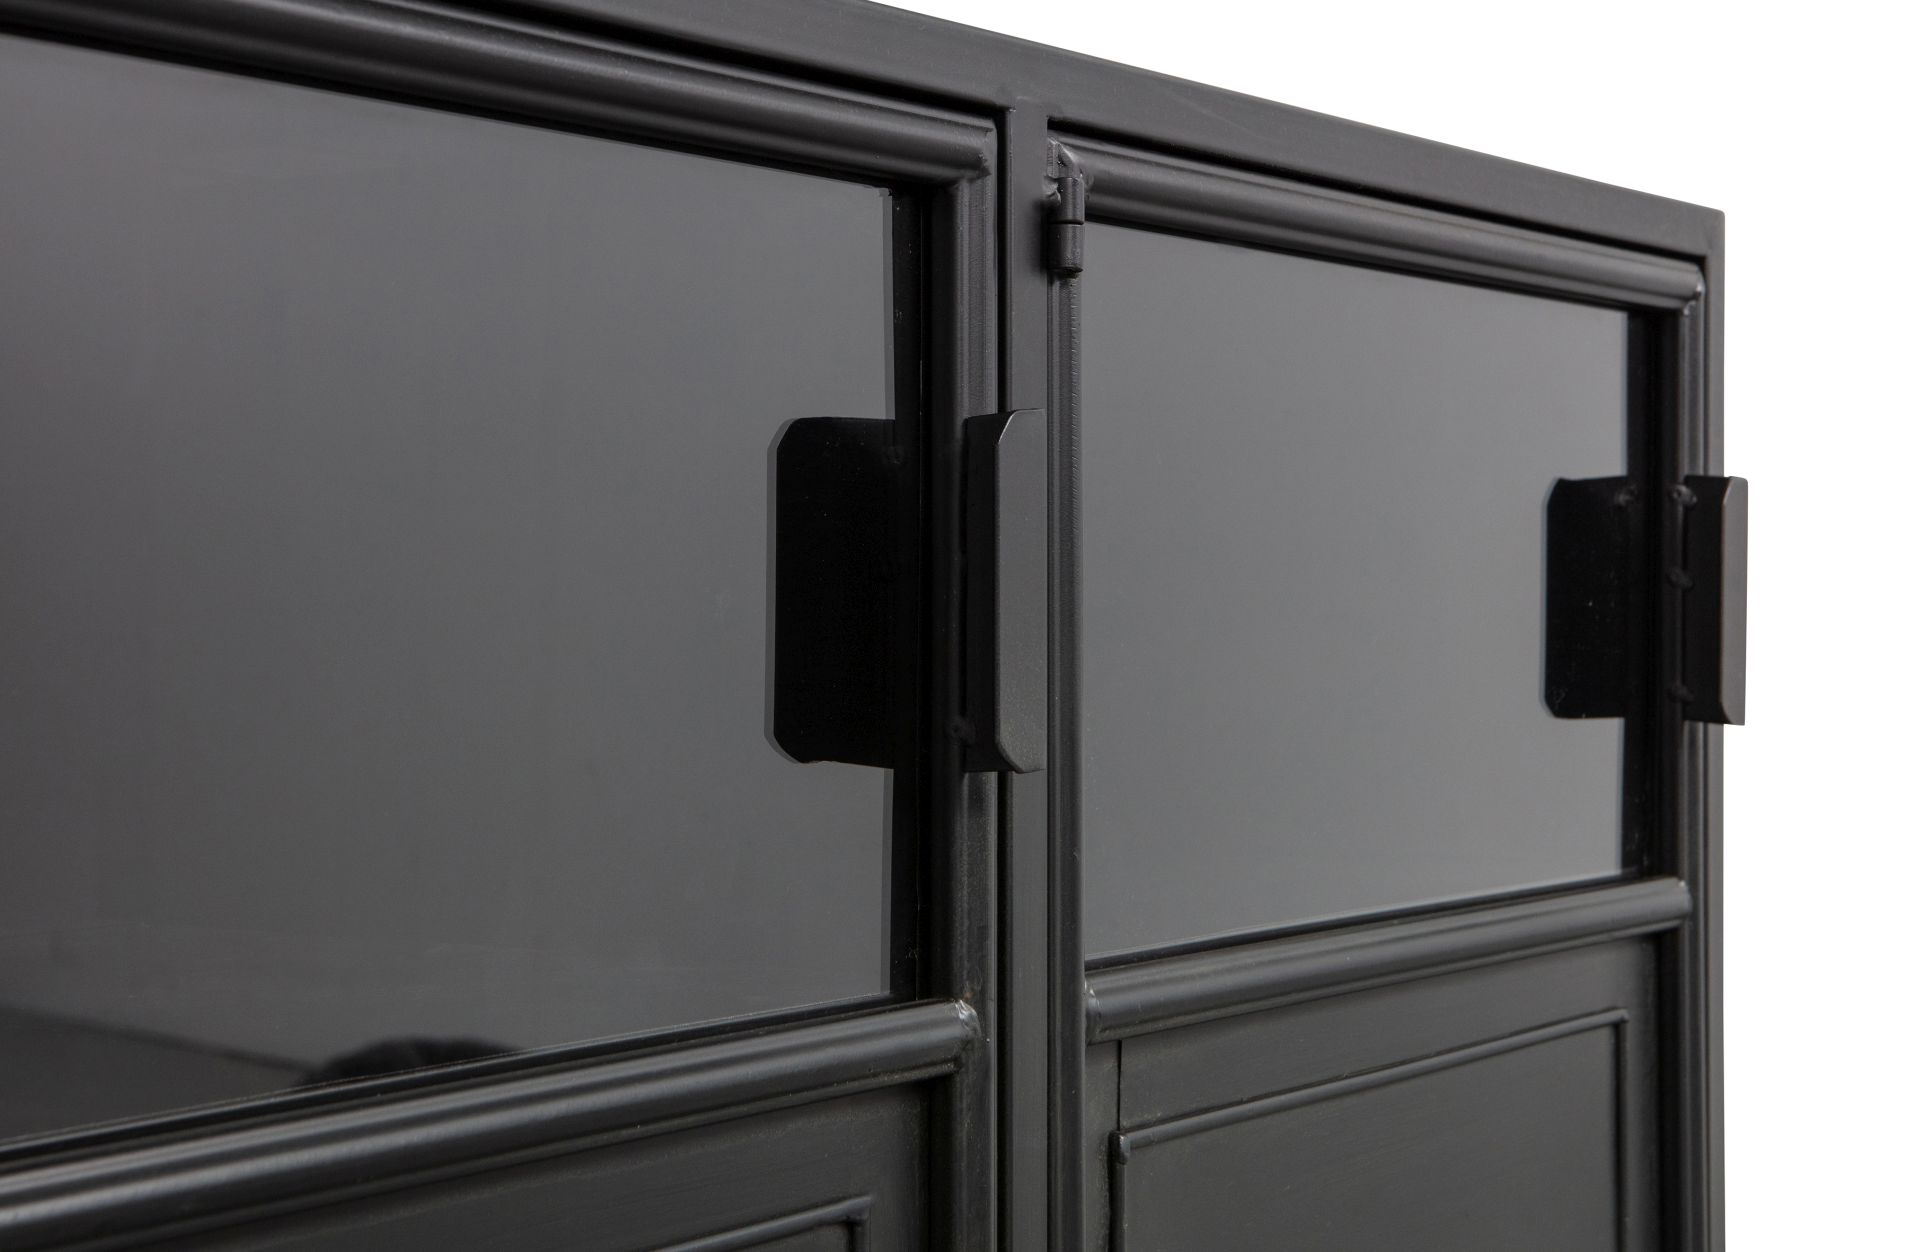 Das Sideboard Ronja überzeugt mit seinem industriellem Design. Gefertigt wurde es aus Metall, welches einen schwarzen Farbton besitzt. Die Türen sind aus Metall und Glas. Die Vitrine verfügt über drei Türen.